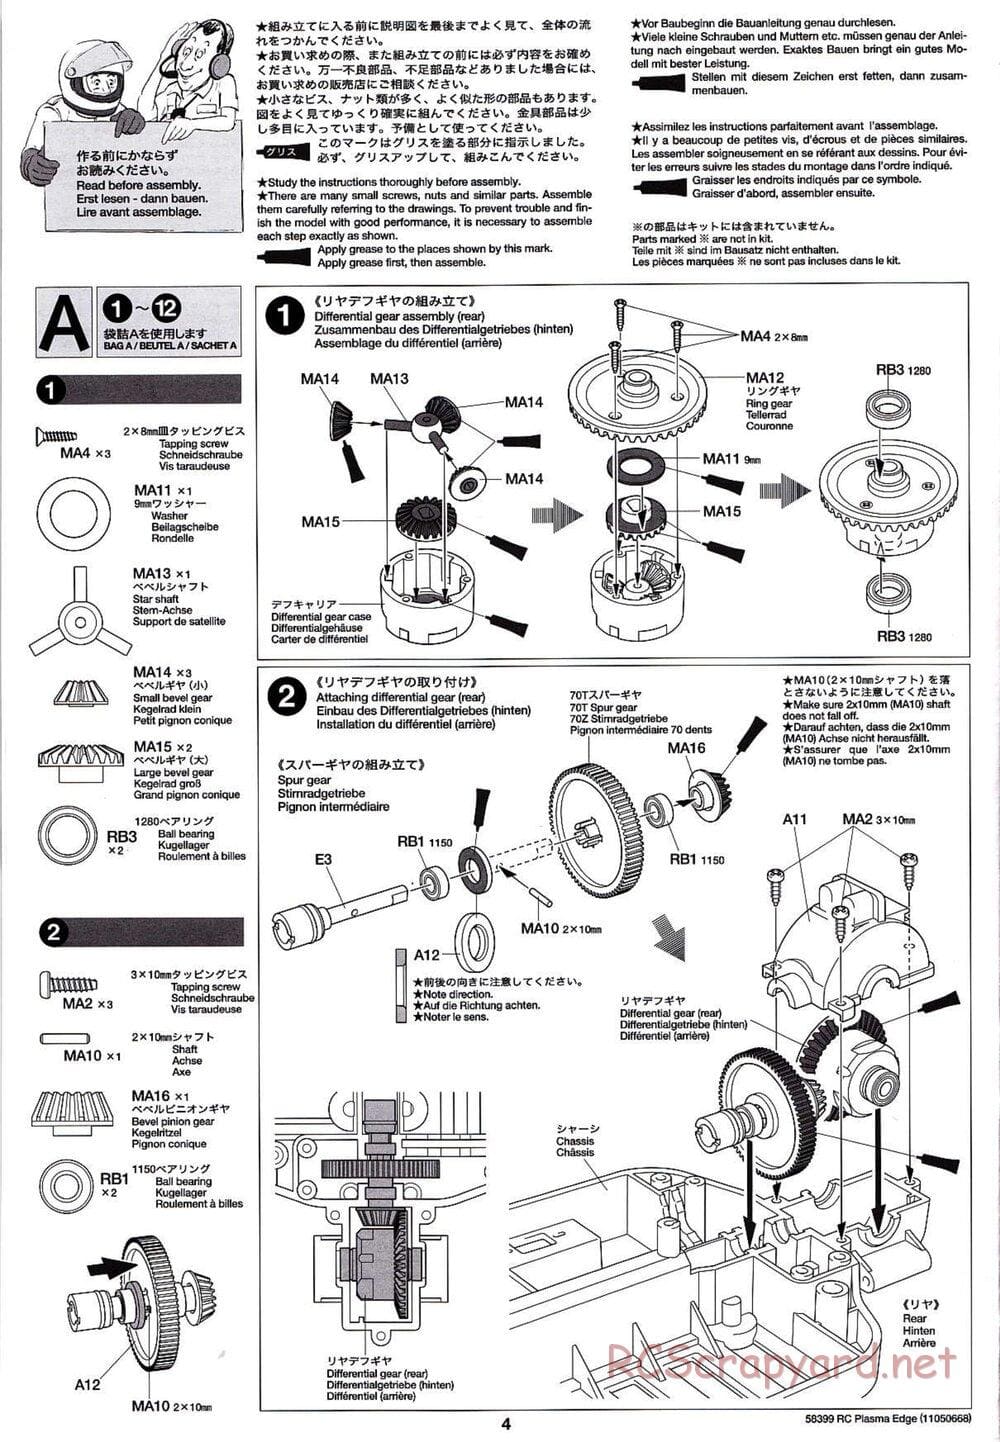 Tamiya - Plasma Edge Chassis - Manual - Page 4